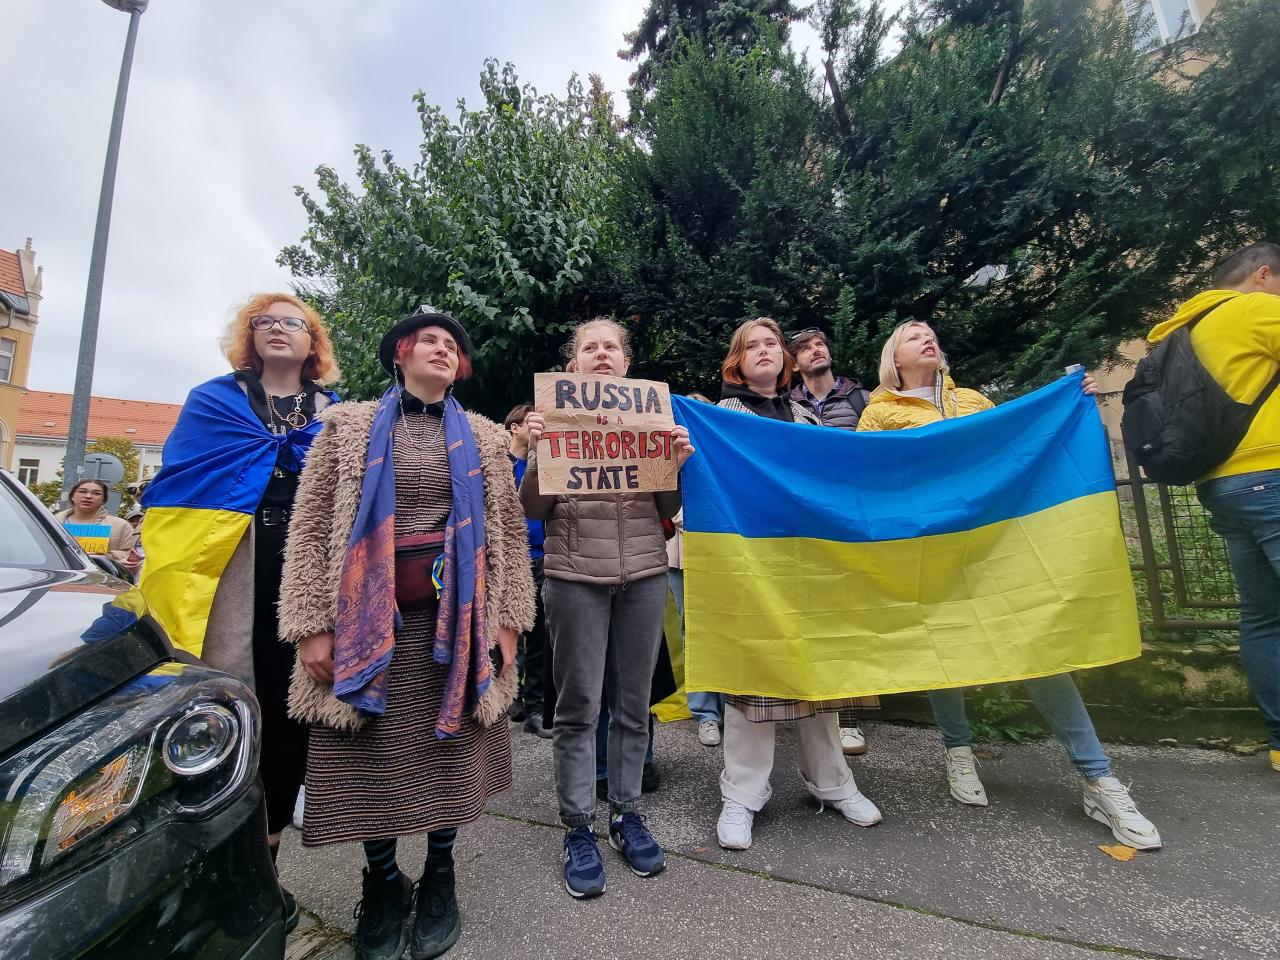 Devant l’ambassade de Russie vendredi, ils ont manifesté contre l’annexion des territoires ukrainiens |  .une semaine